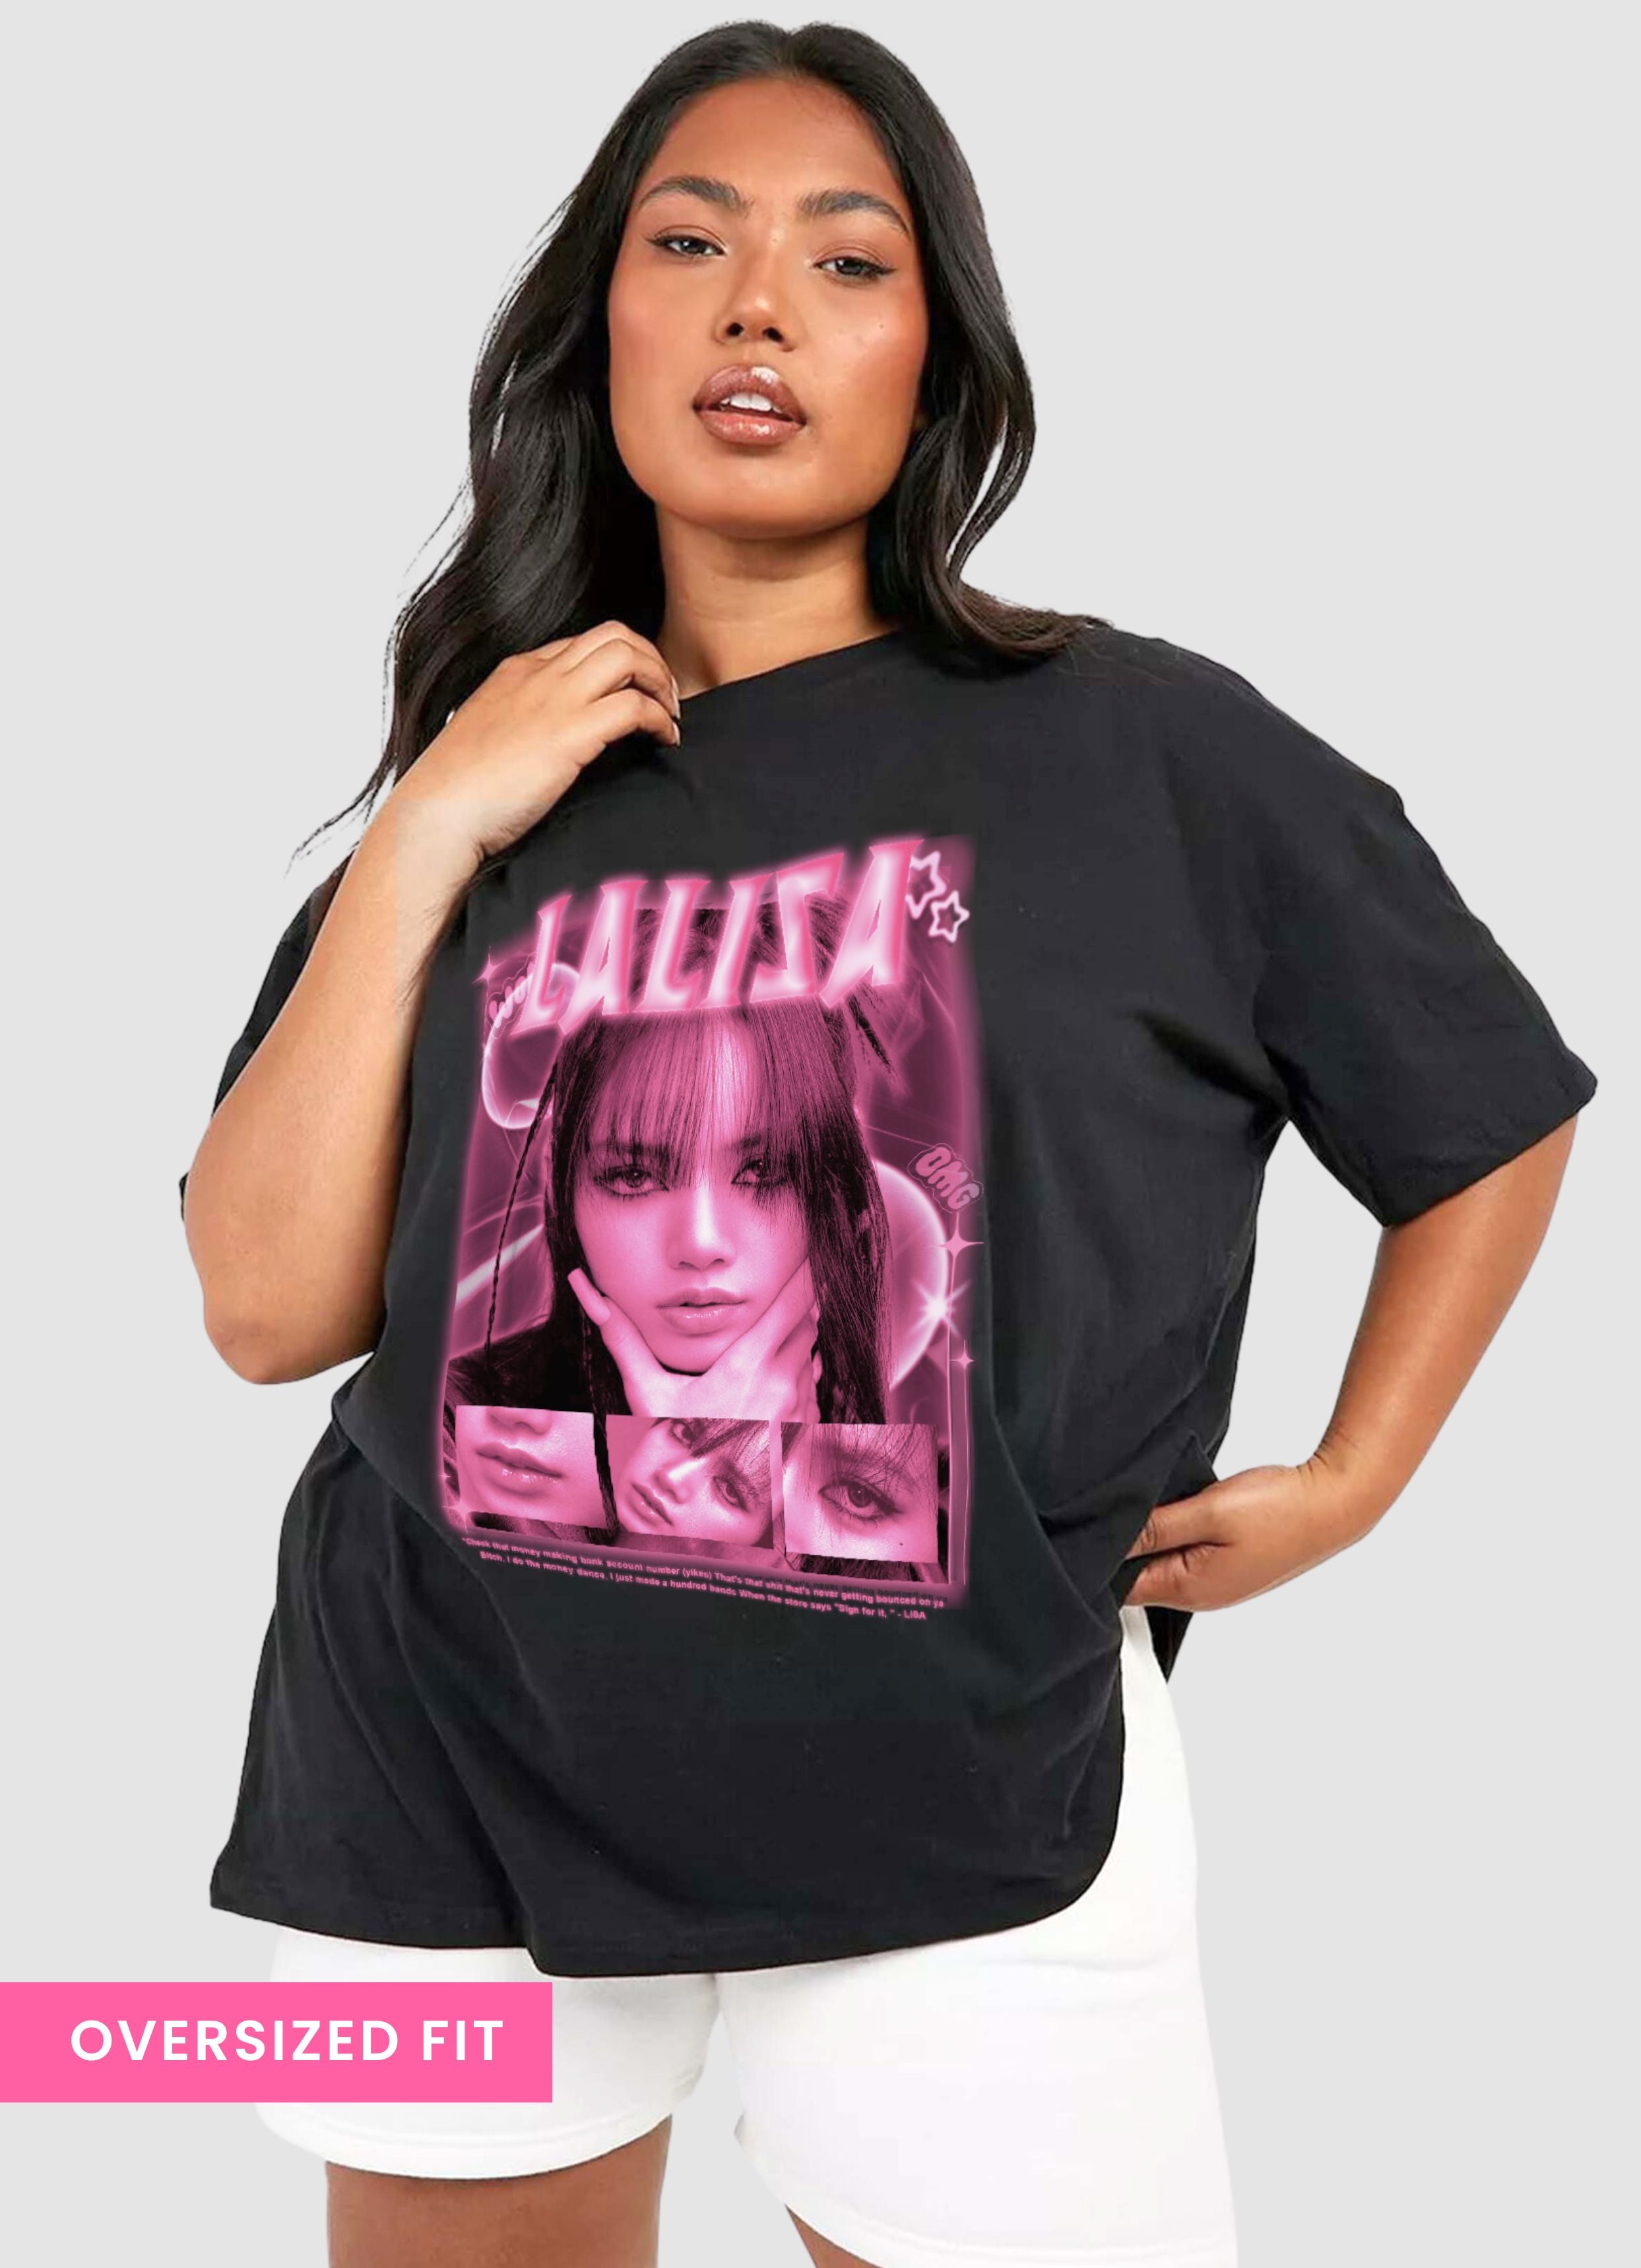 Lalisa Bias Oversized Unisex T-shirt